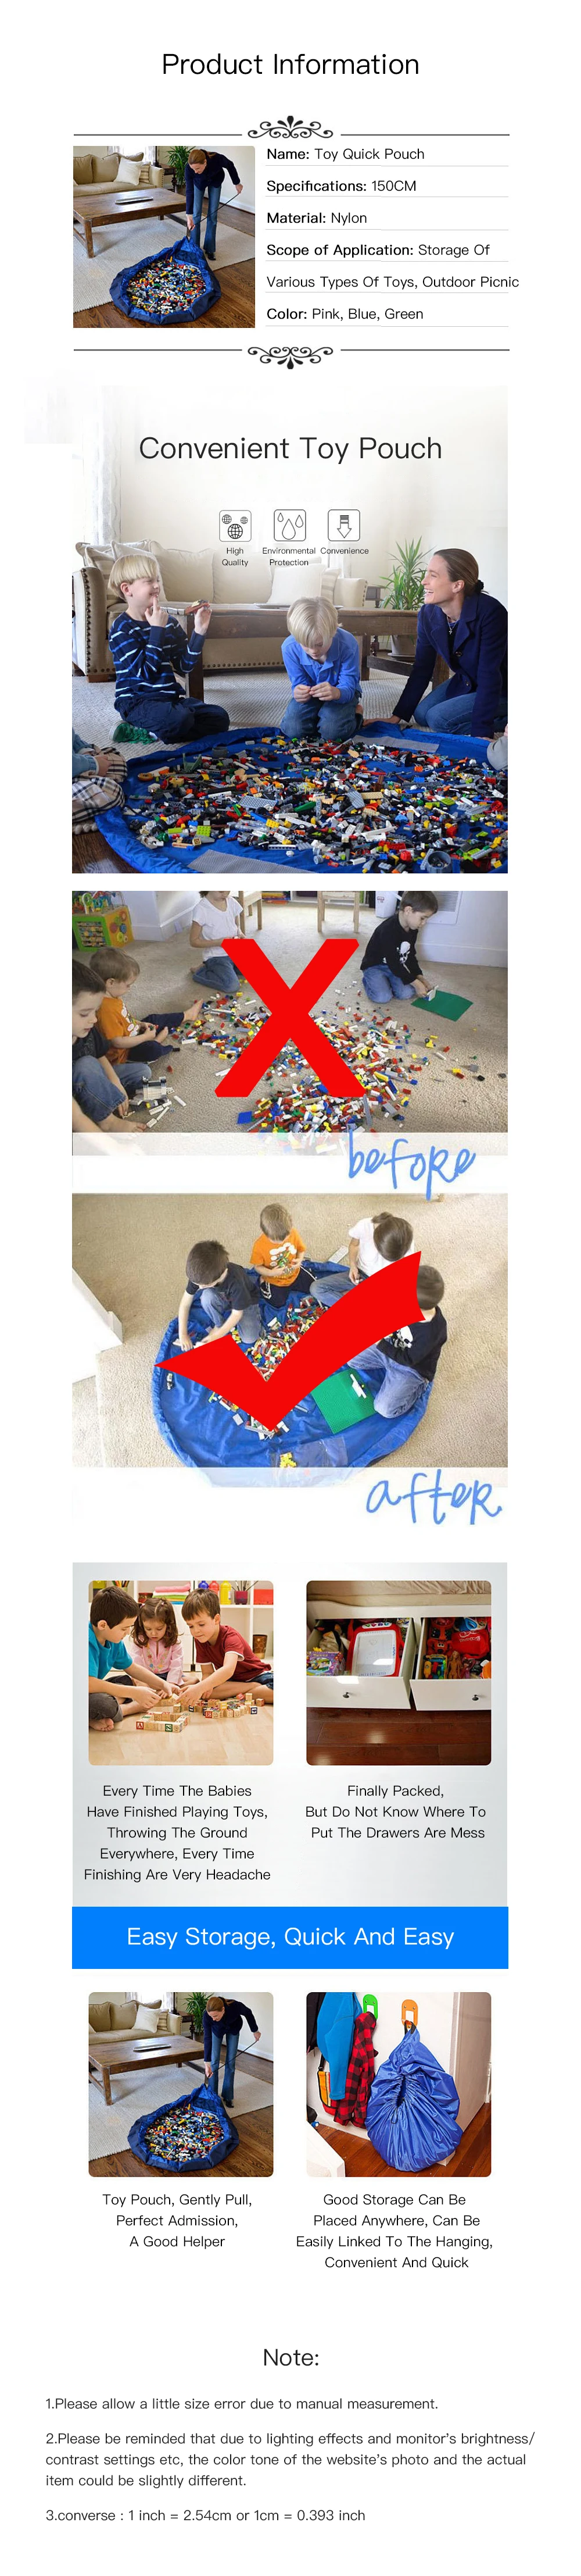 Сумка для хранения Водонепроницаемый детский игровой коврик Портативный организатор детские игрушки на открытом воздухе большие строительные блоки коврик два Размеры 50/150 см